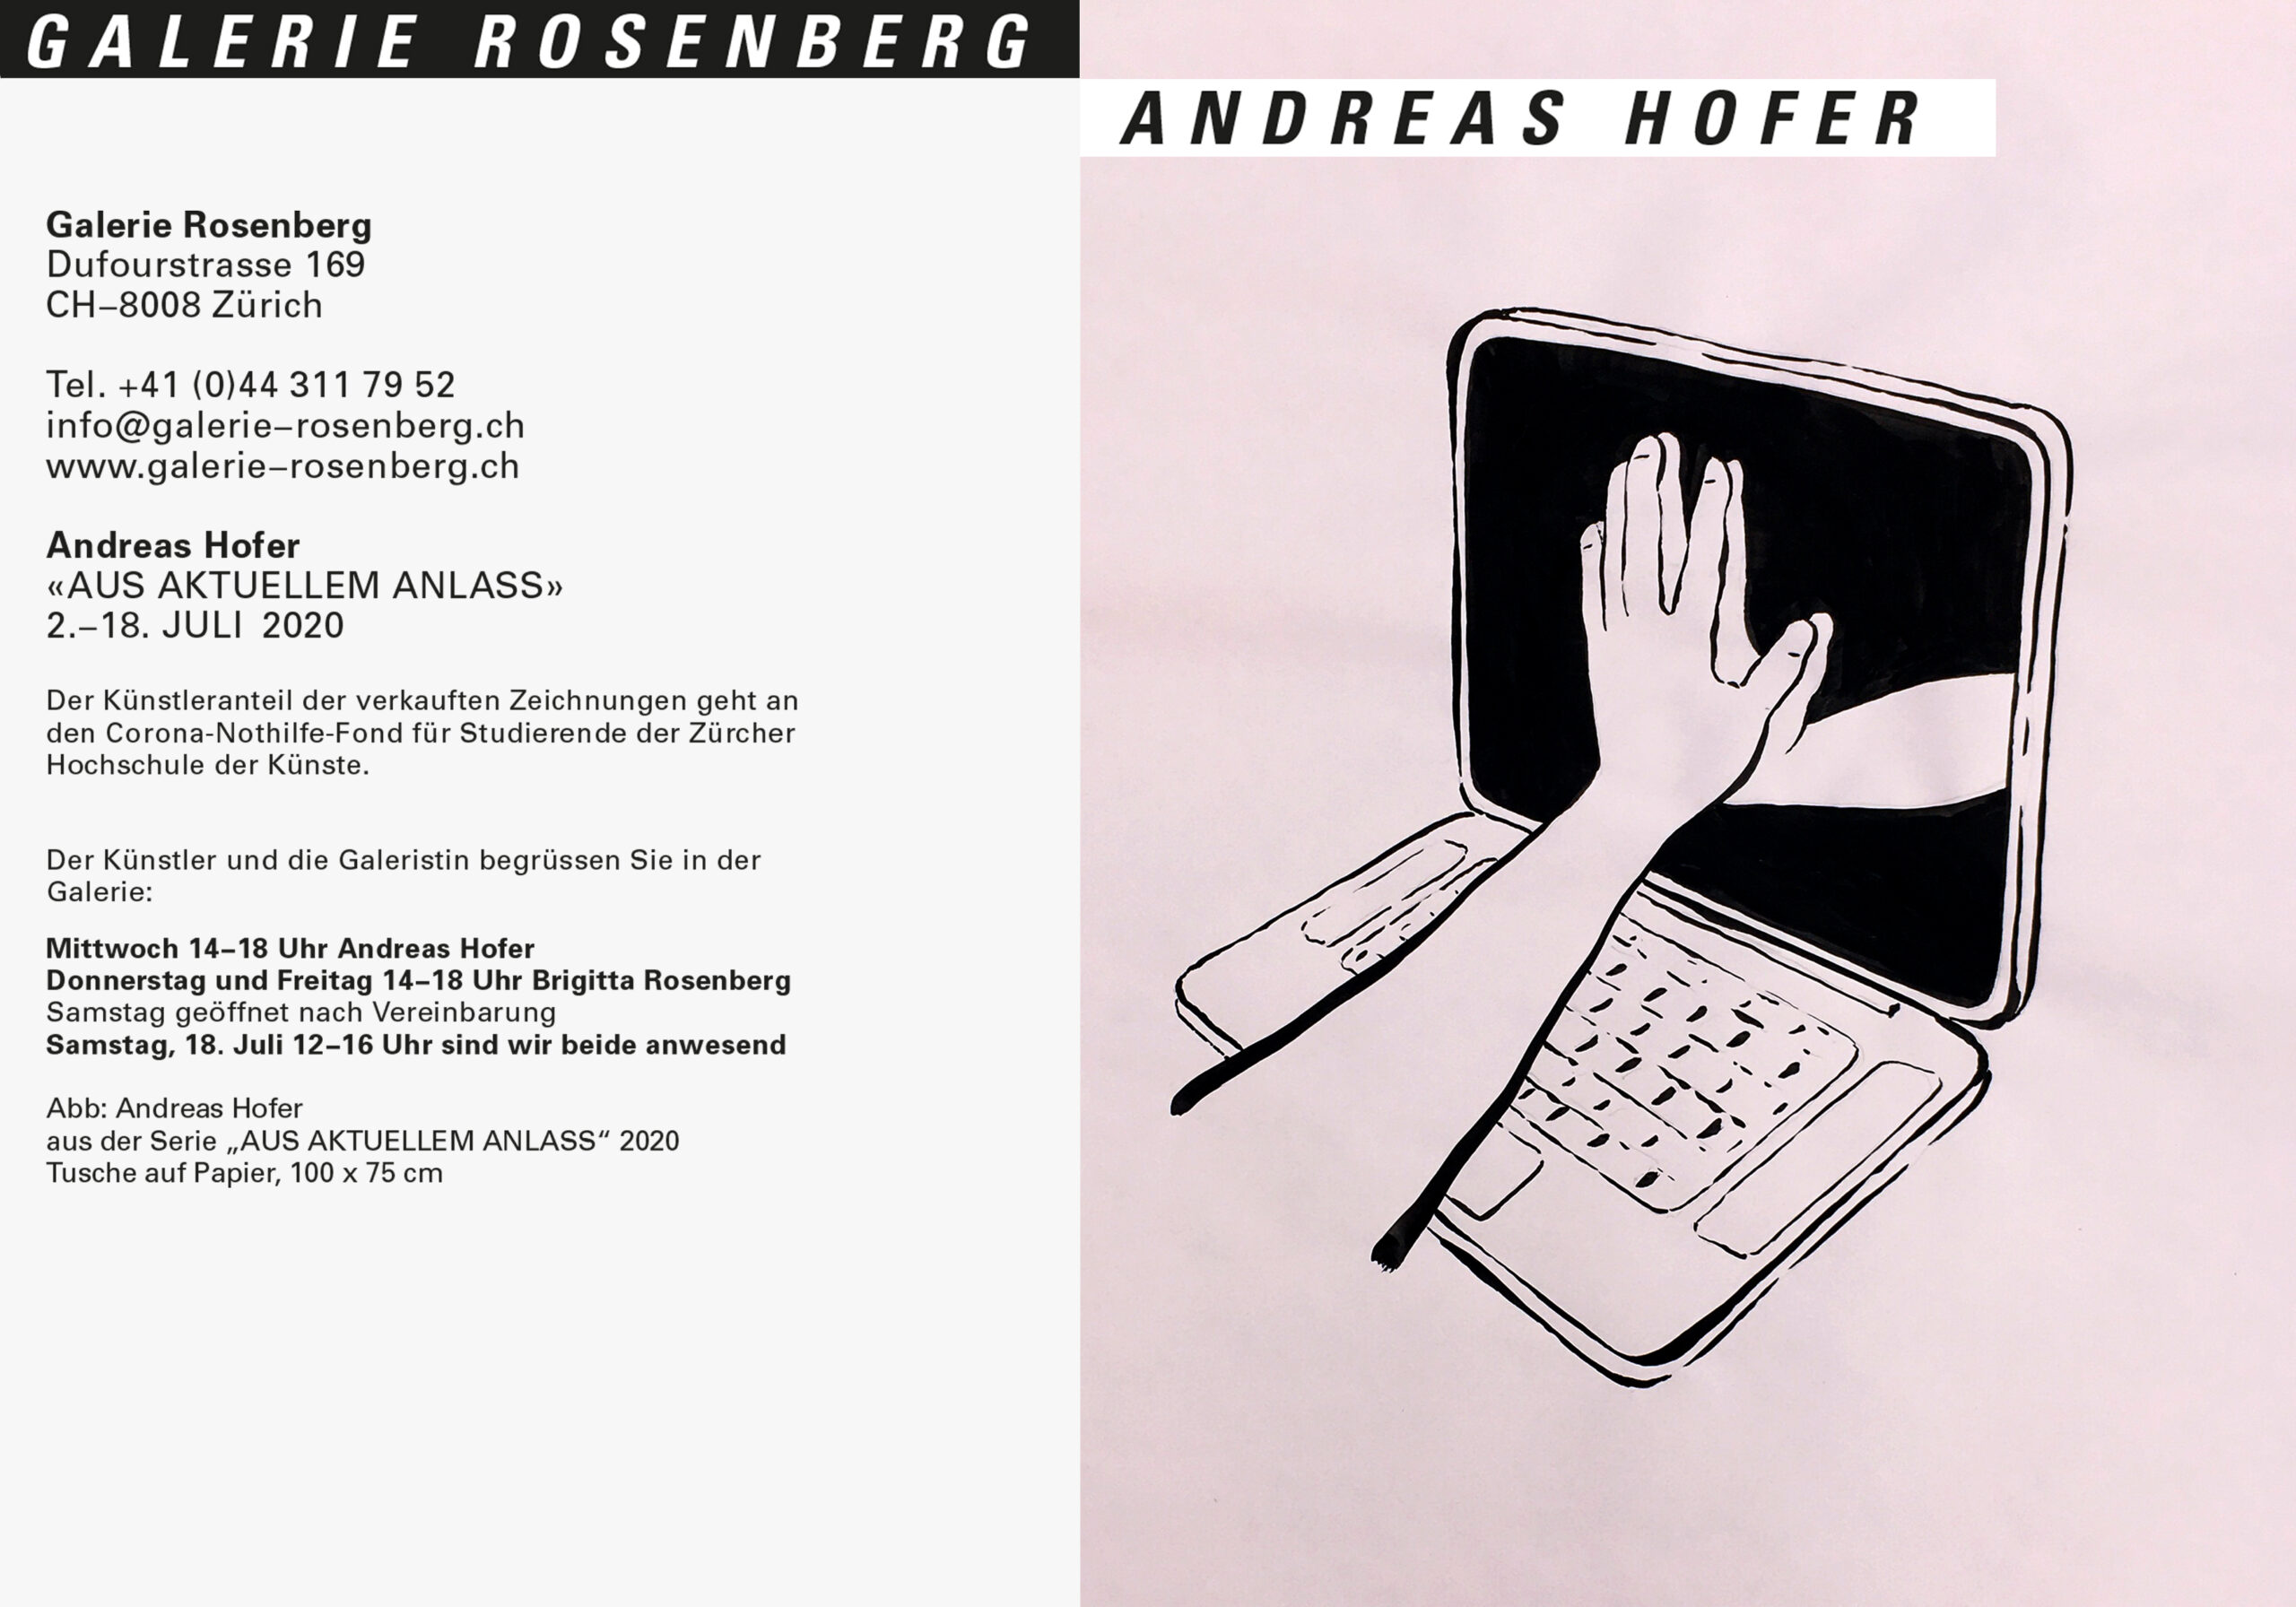 Galerie Rosenberg Zürich 2020